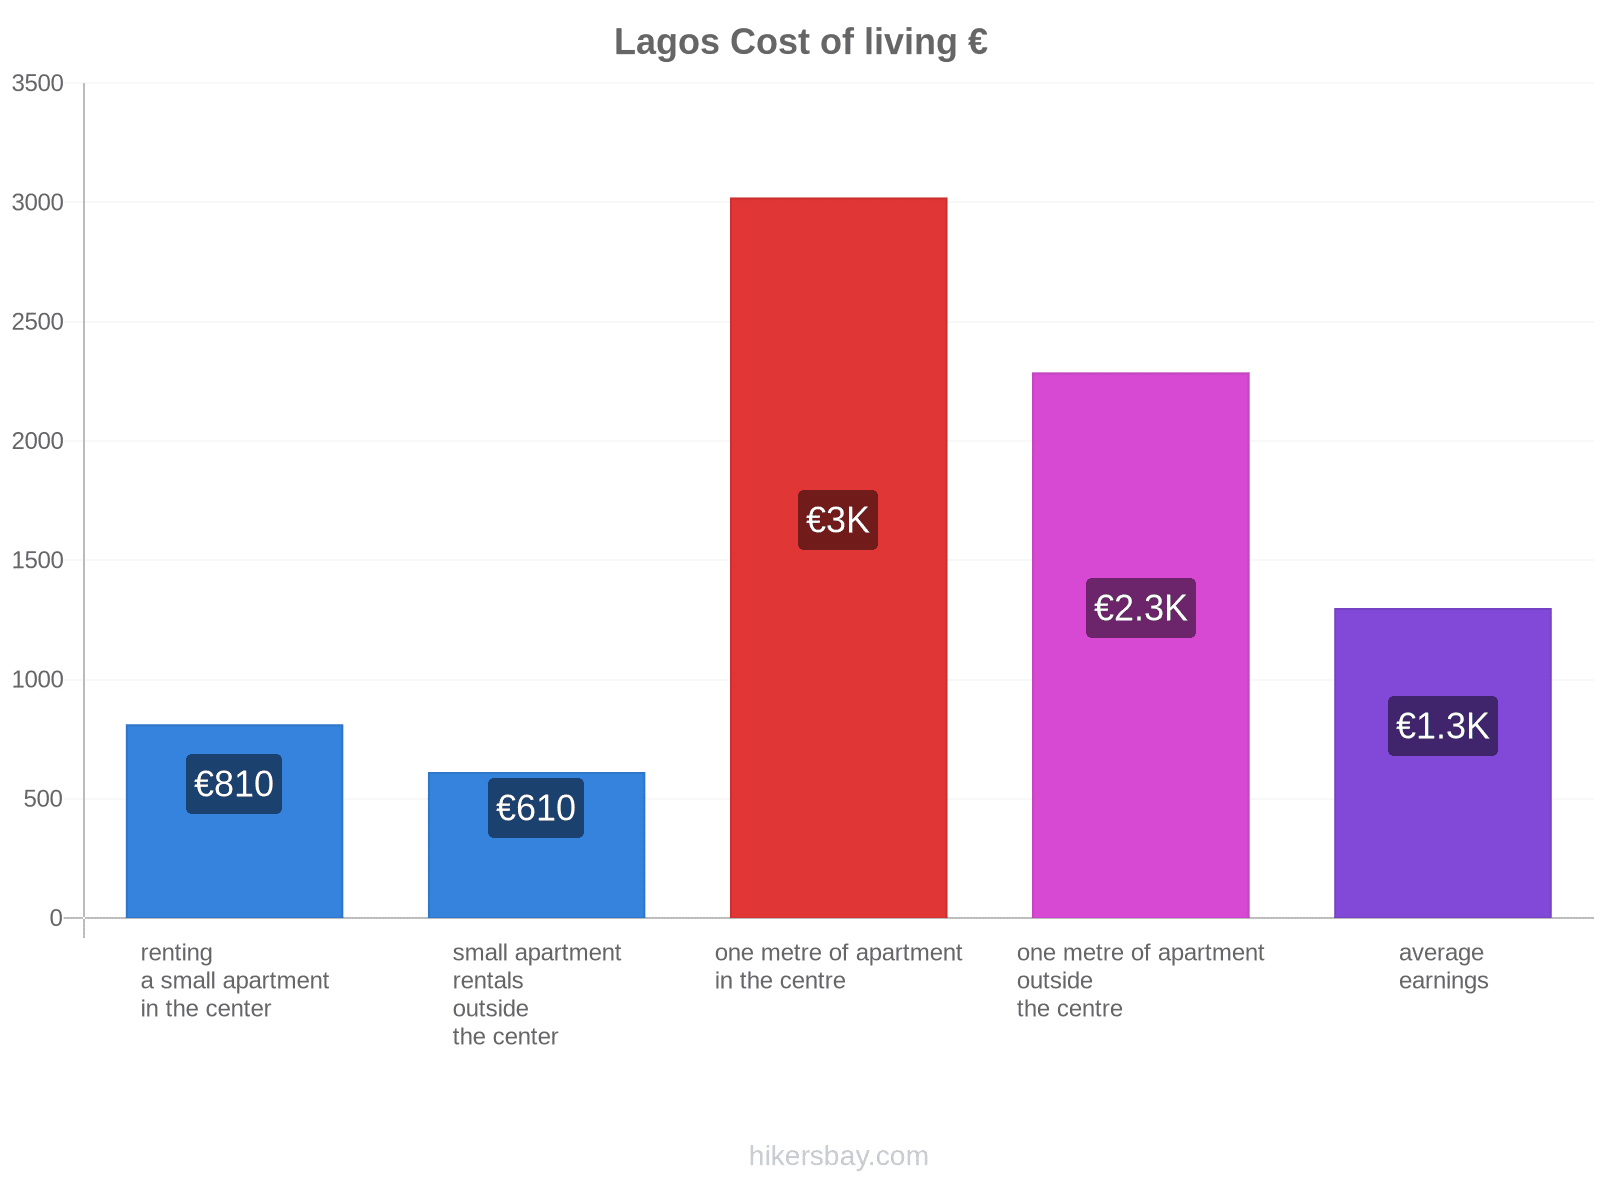 Lagos cost of living hikersbay.com